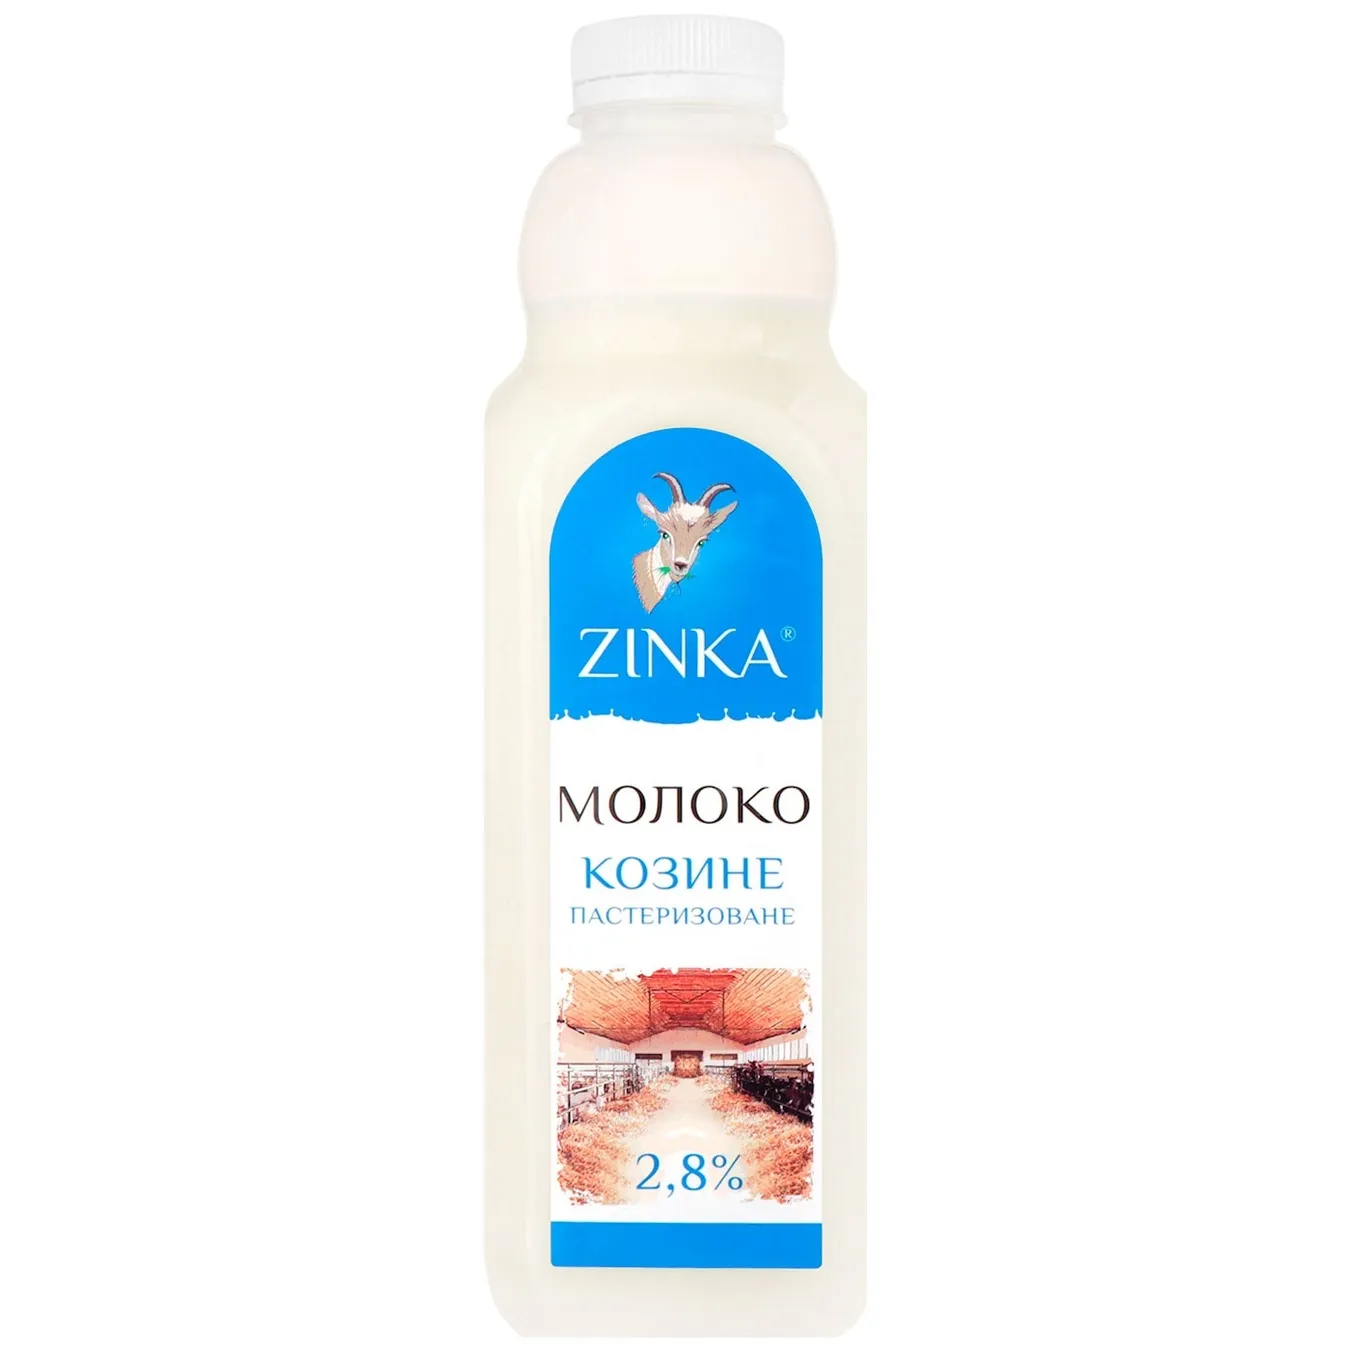 Молоко Zinka козине пастеризоване 2.8% 930г